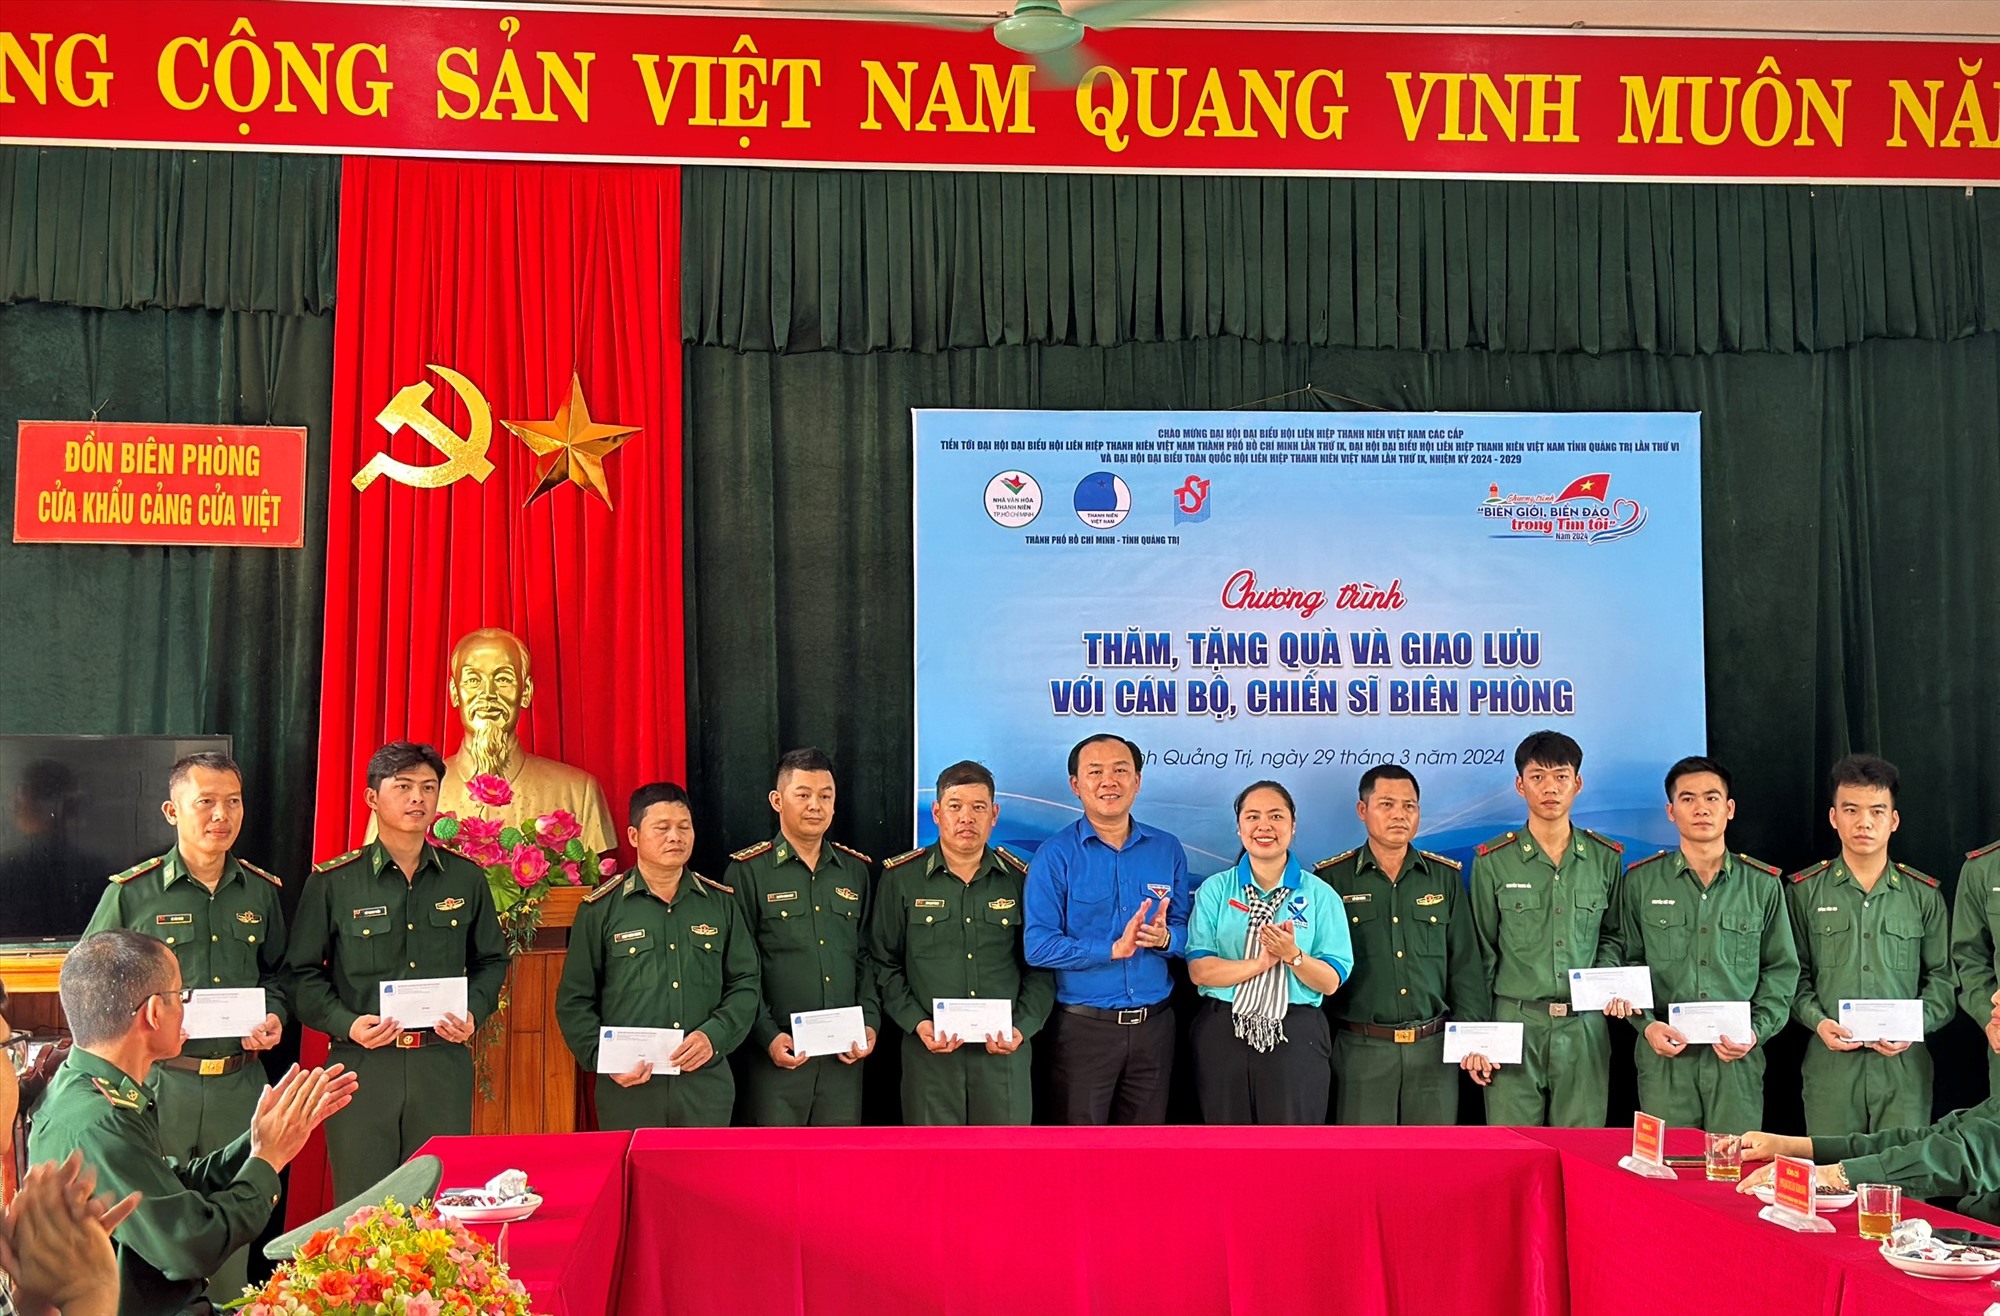 Trao tặng quà cho cán bộ, chiến sĩ Đồn Biên phòng Cửa khẩu cảng Cửa Việt - Ảnh: ĐV